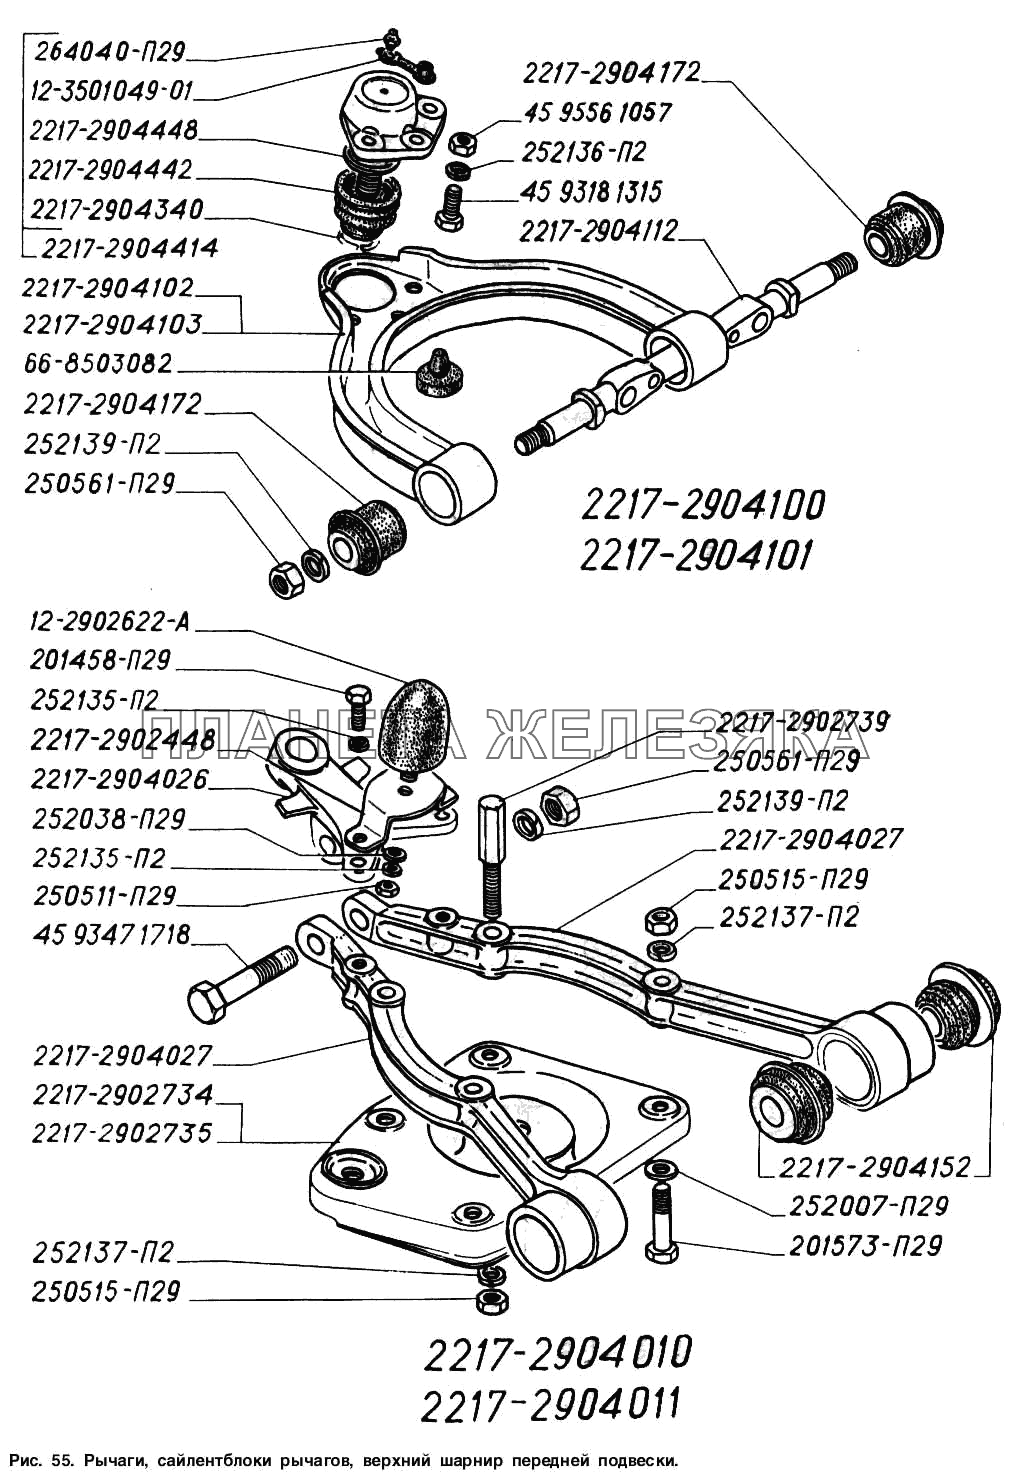 Рычаги, сайлентблоки рычагов, верхний шарнир передней подвески ГАЗ-2217 (Соболь)